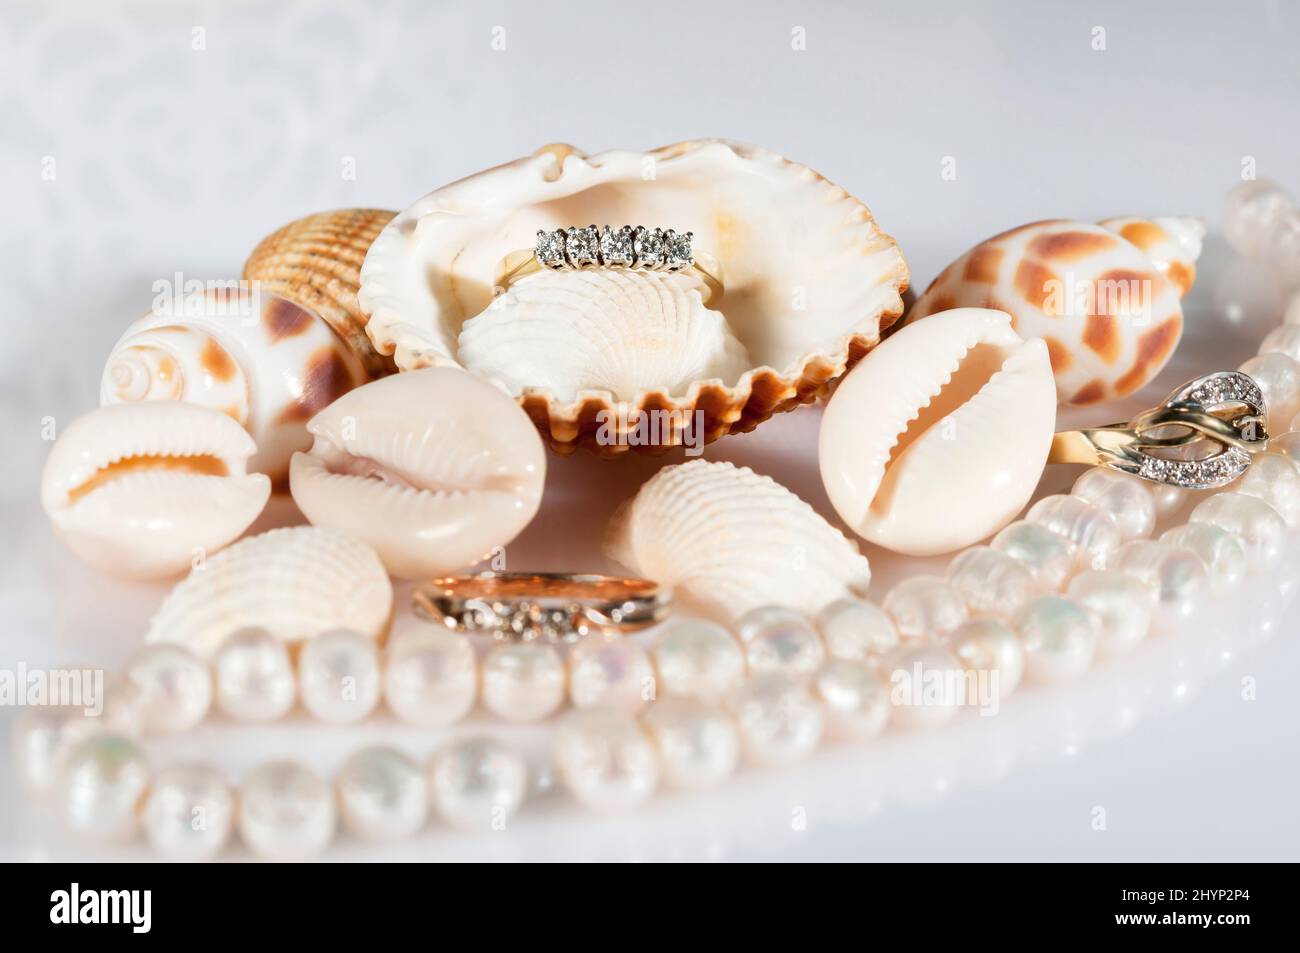 Gioielli in oro tra le conchiglie. Belle conchiglie, una serie di perle e anelli d'oro. Foto Stock